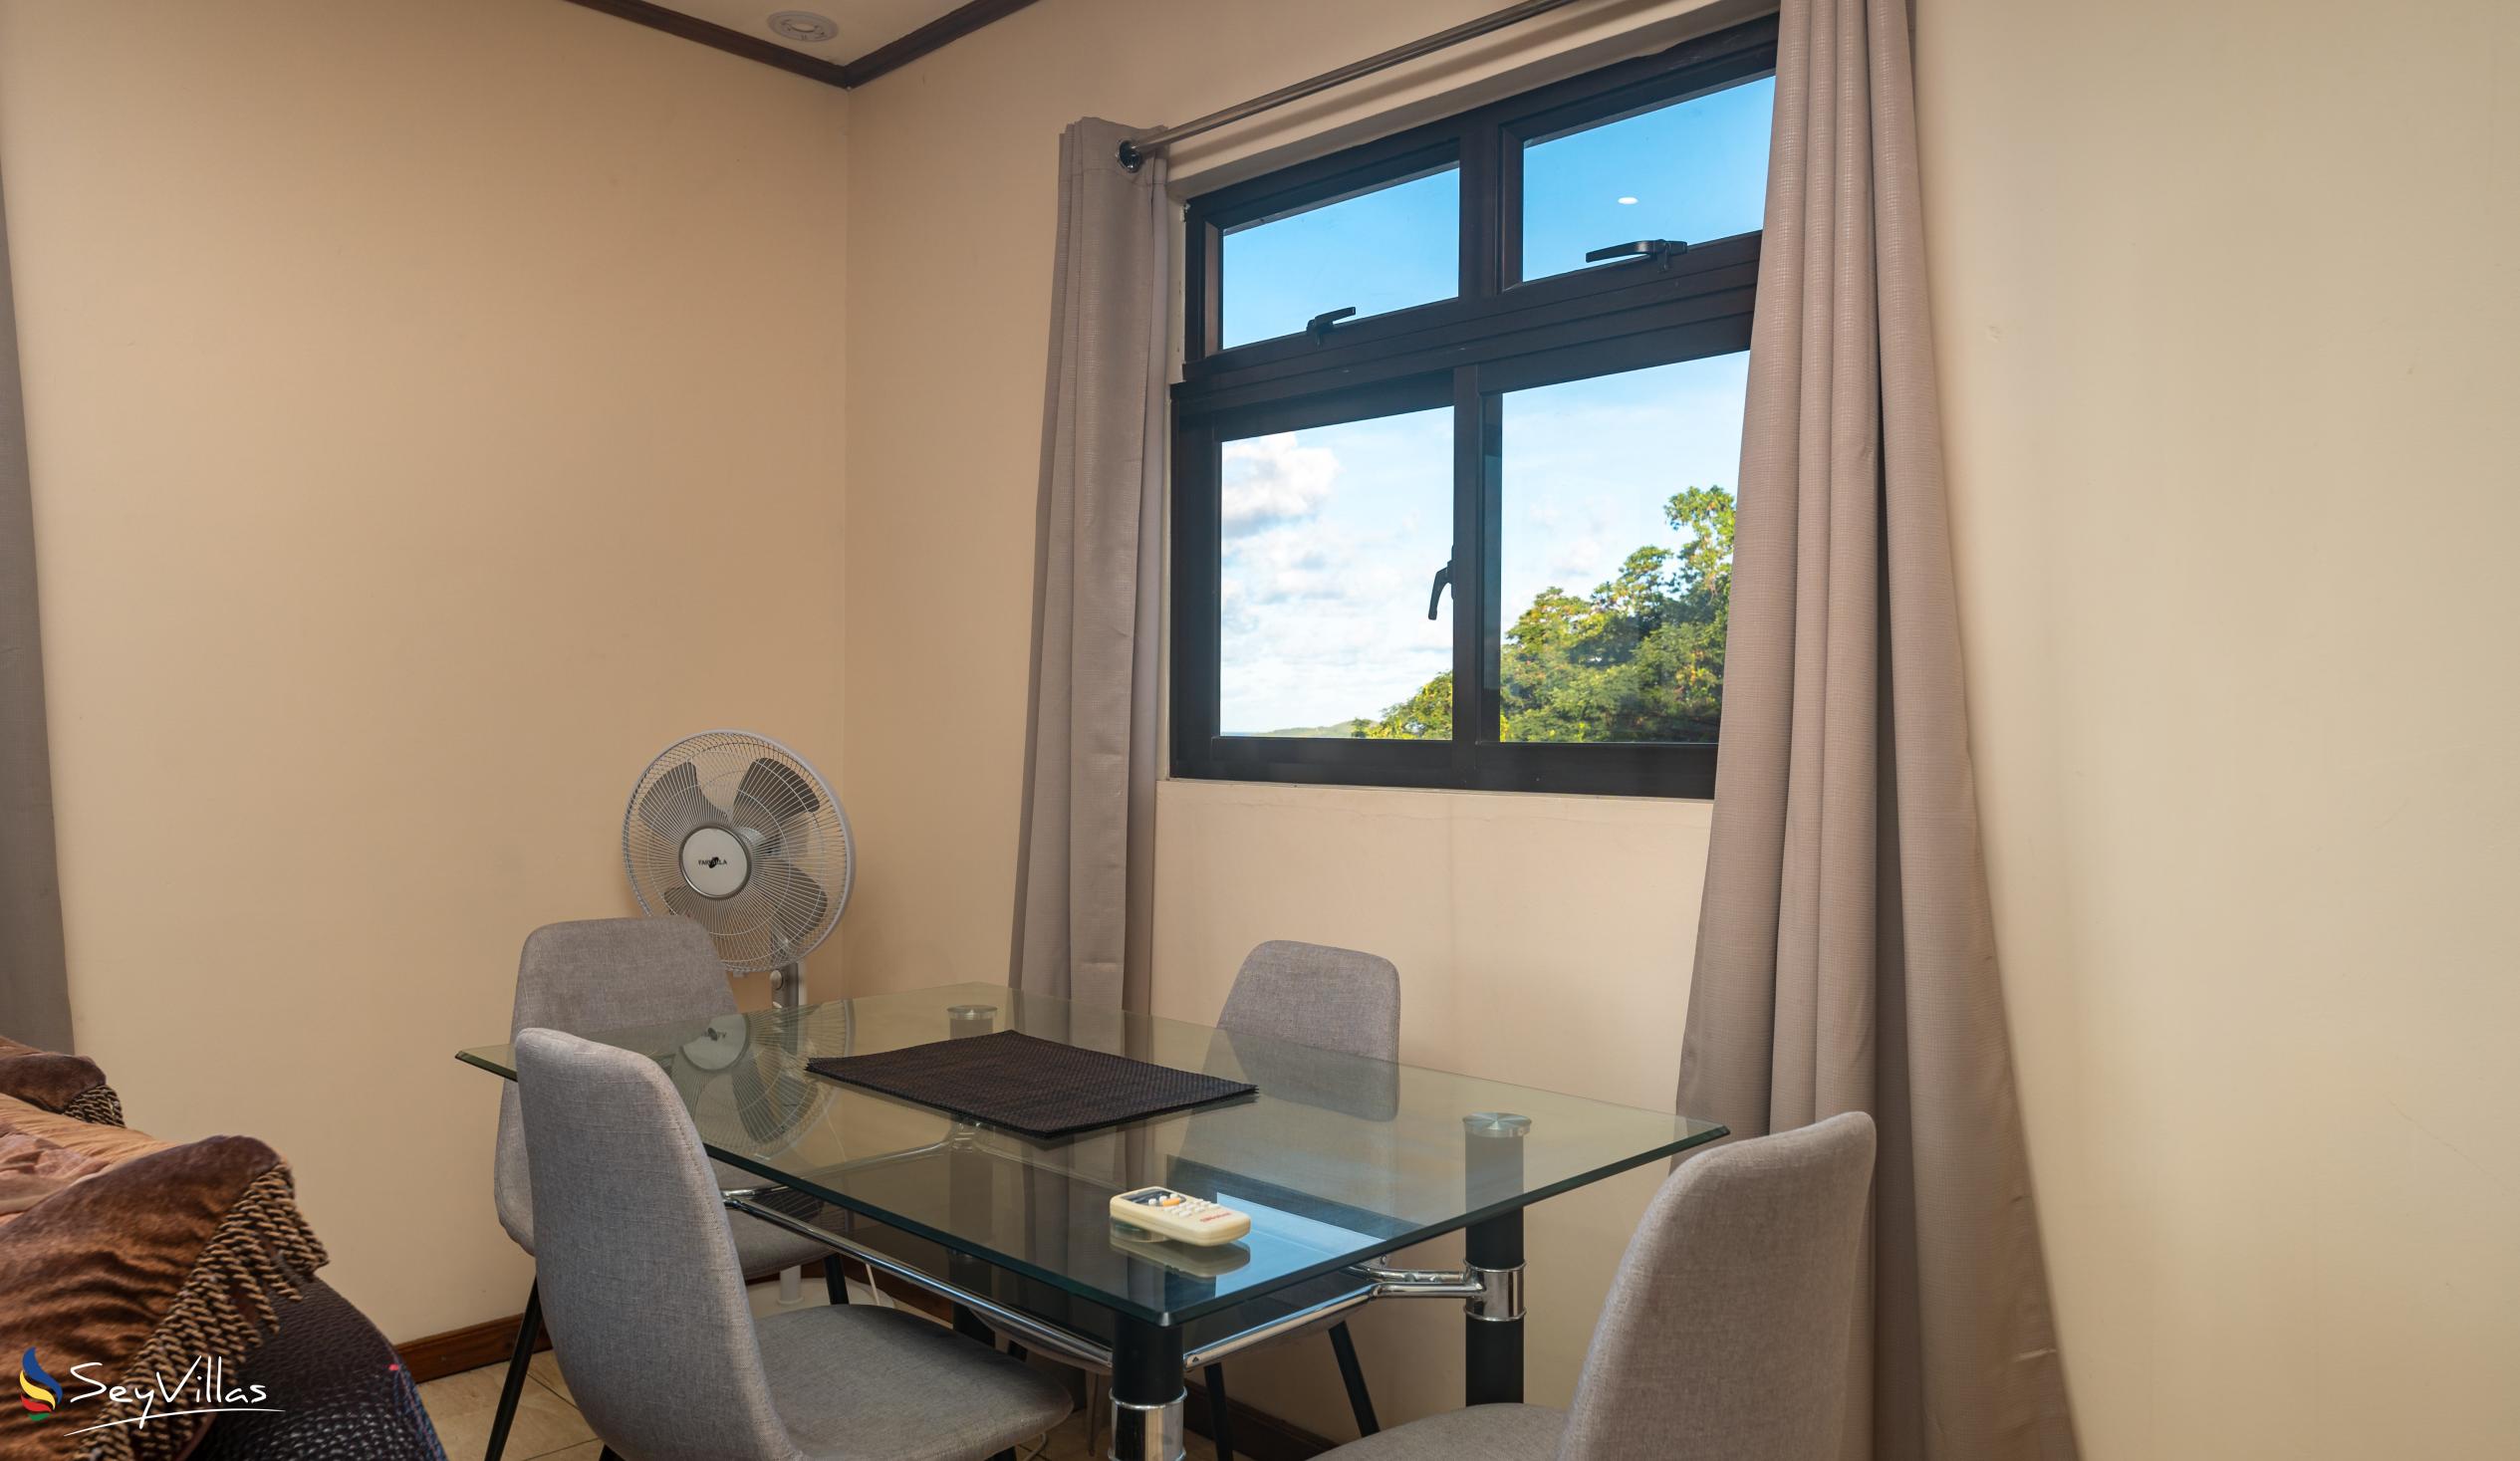 Foto 44: Maison L'Horizon - Appartamento con 2 camere Soley - Mahé (Seychelles)